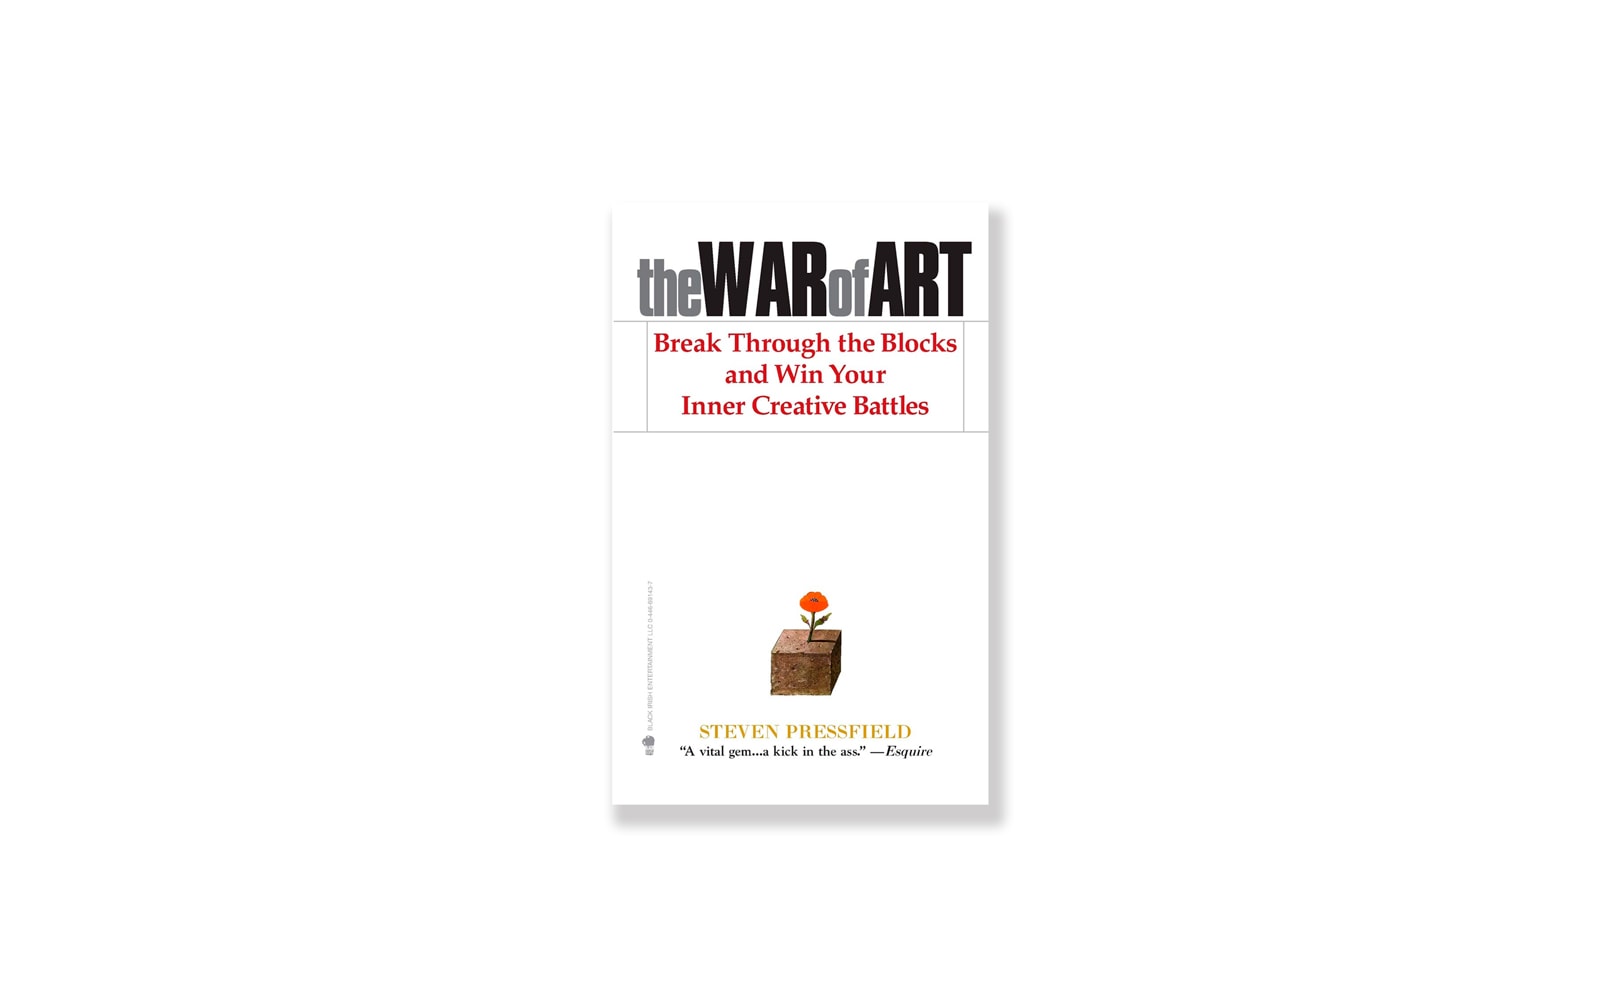 Livro The War of Art (A Guerra da Arte) - Steven Pressfield